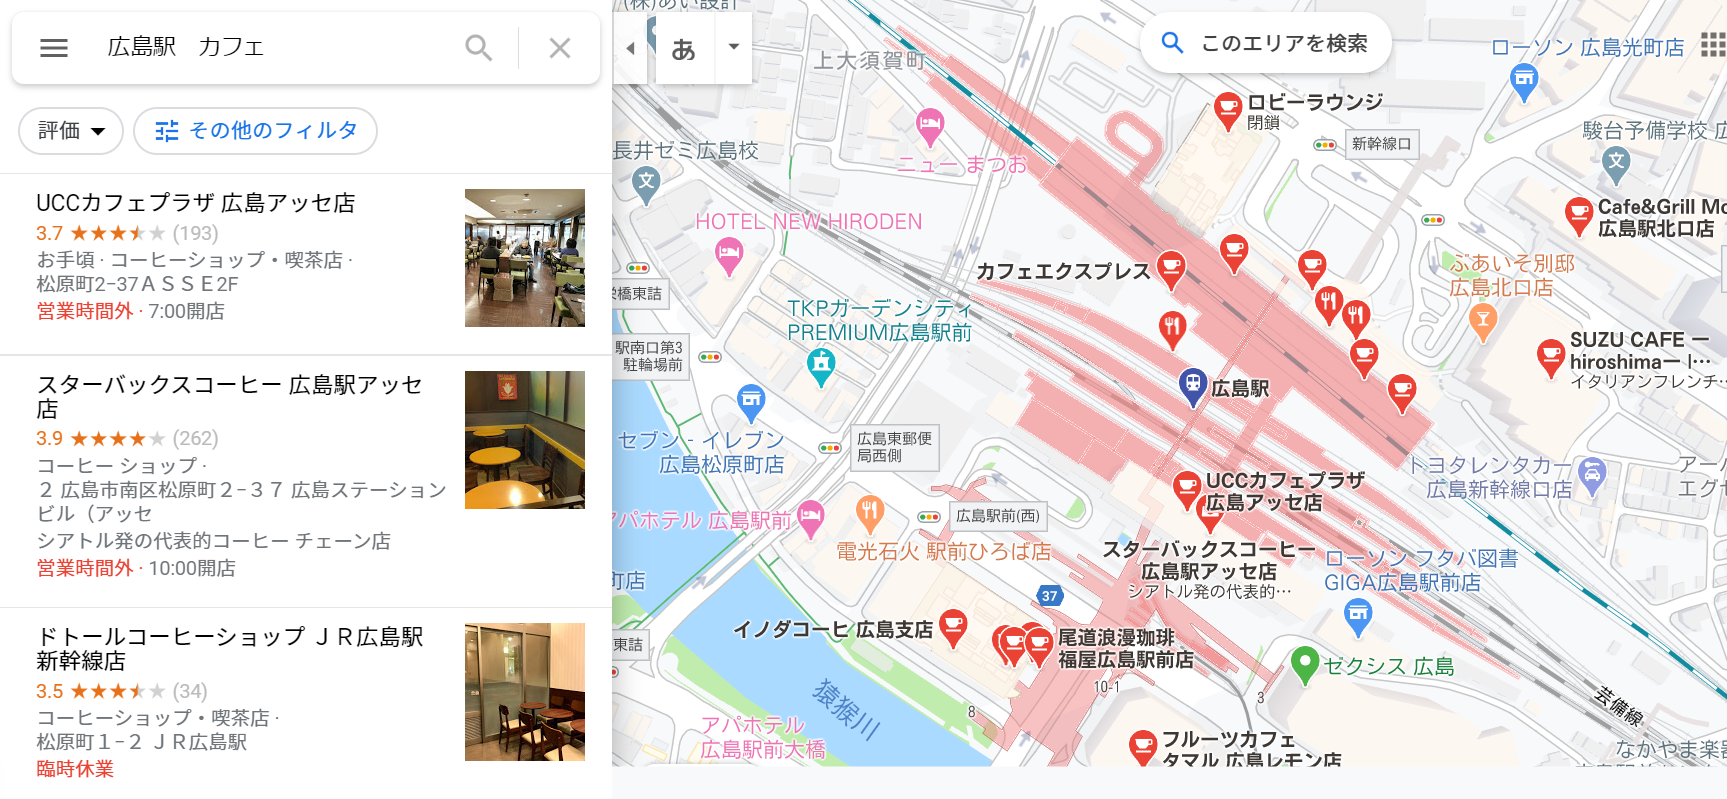 広島駅 カフェでGooglマップ検索